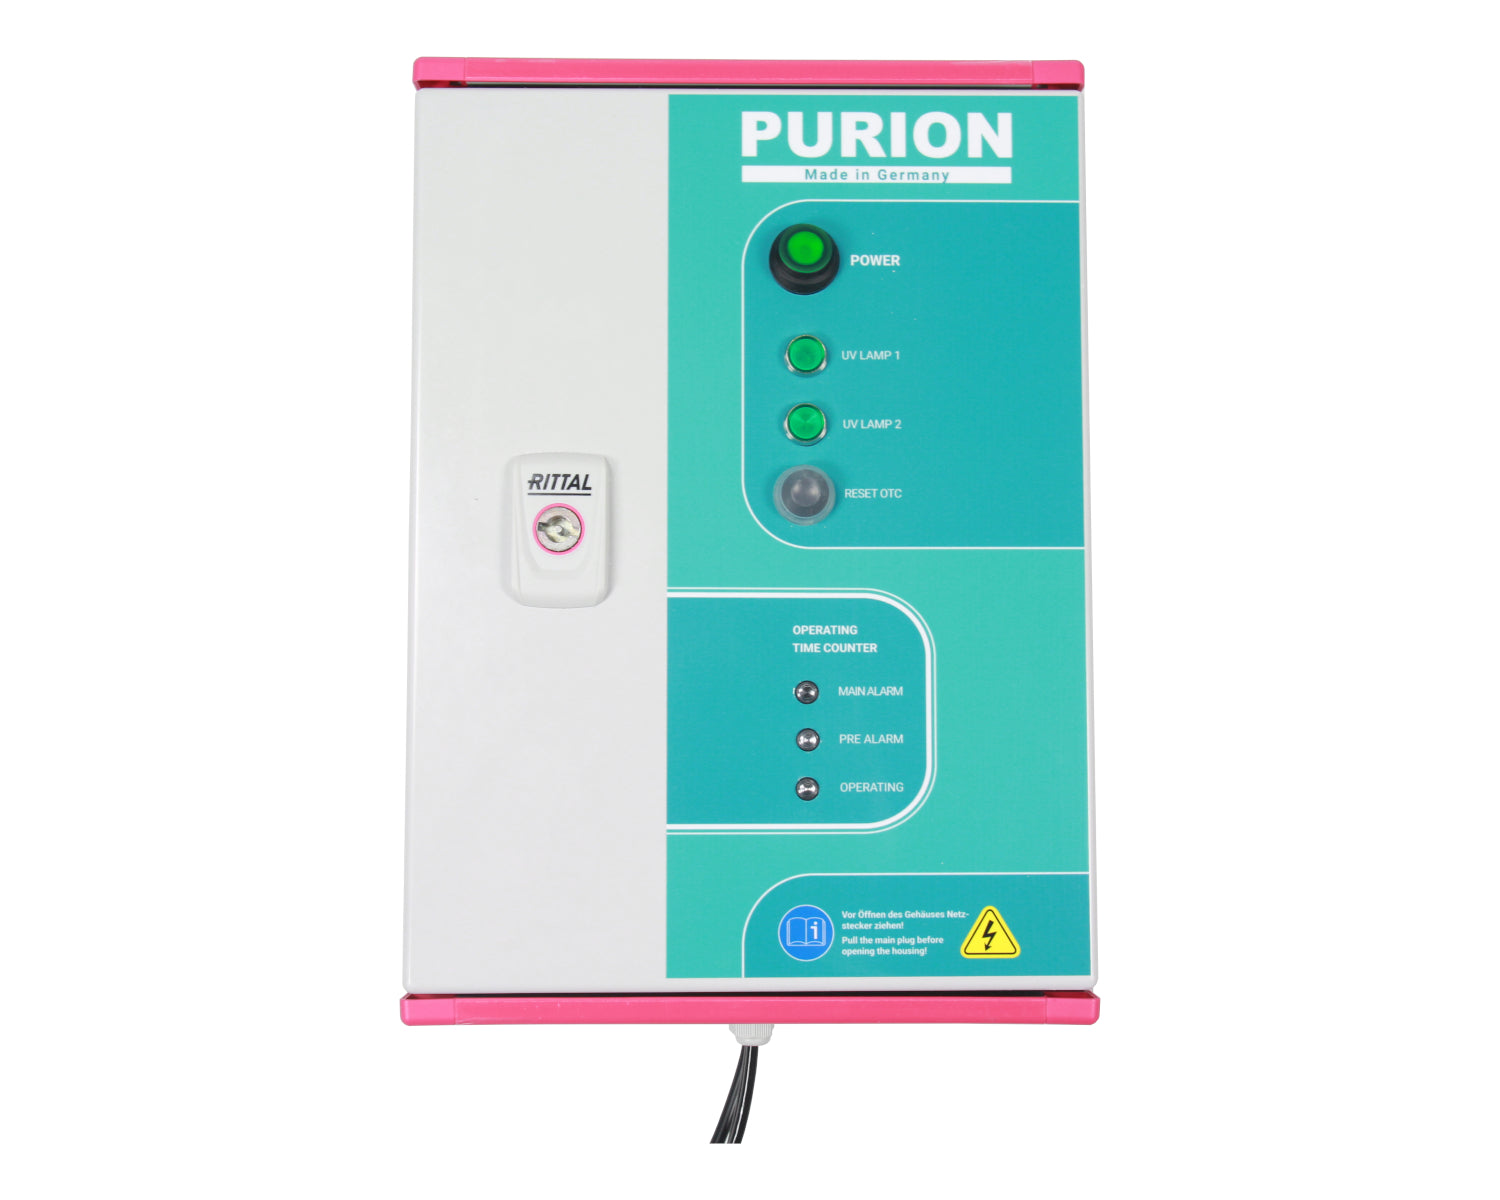 Die Purion GmbH sorgt mit ihrem fortschrittlichen PURION 2500 H DUAL OTC-System für eine effektive UV-C-Desinfektion und gewährleistet eine vollständige Eliminierung von Legionellen.